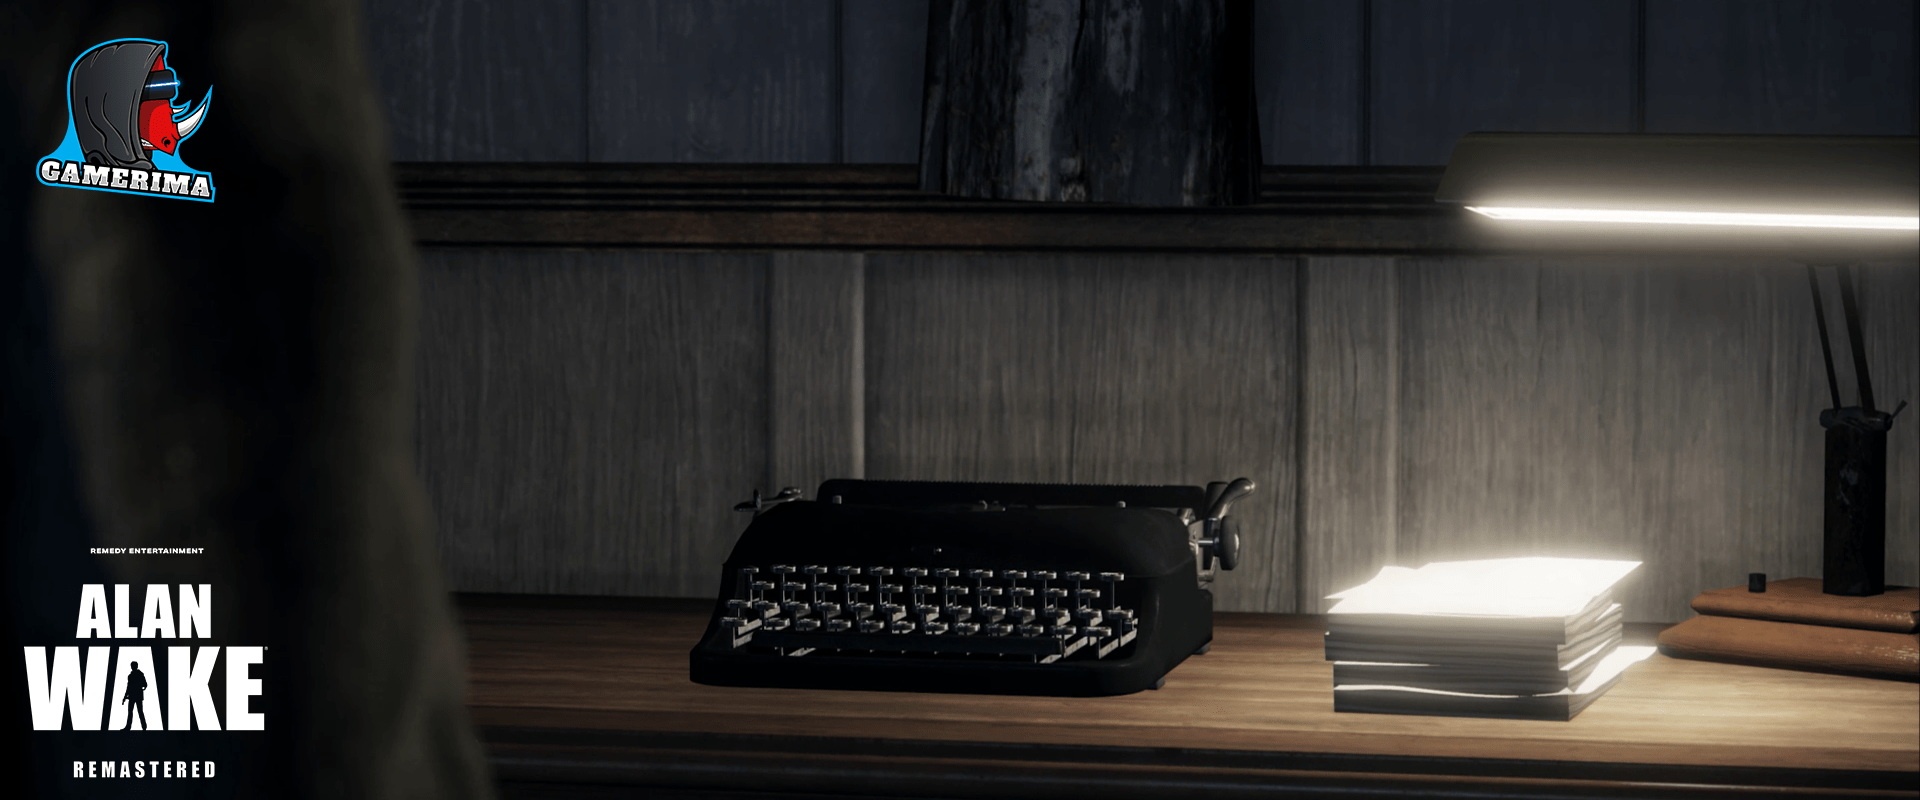 typewriter 